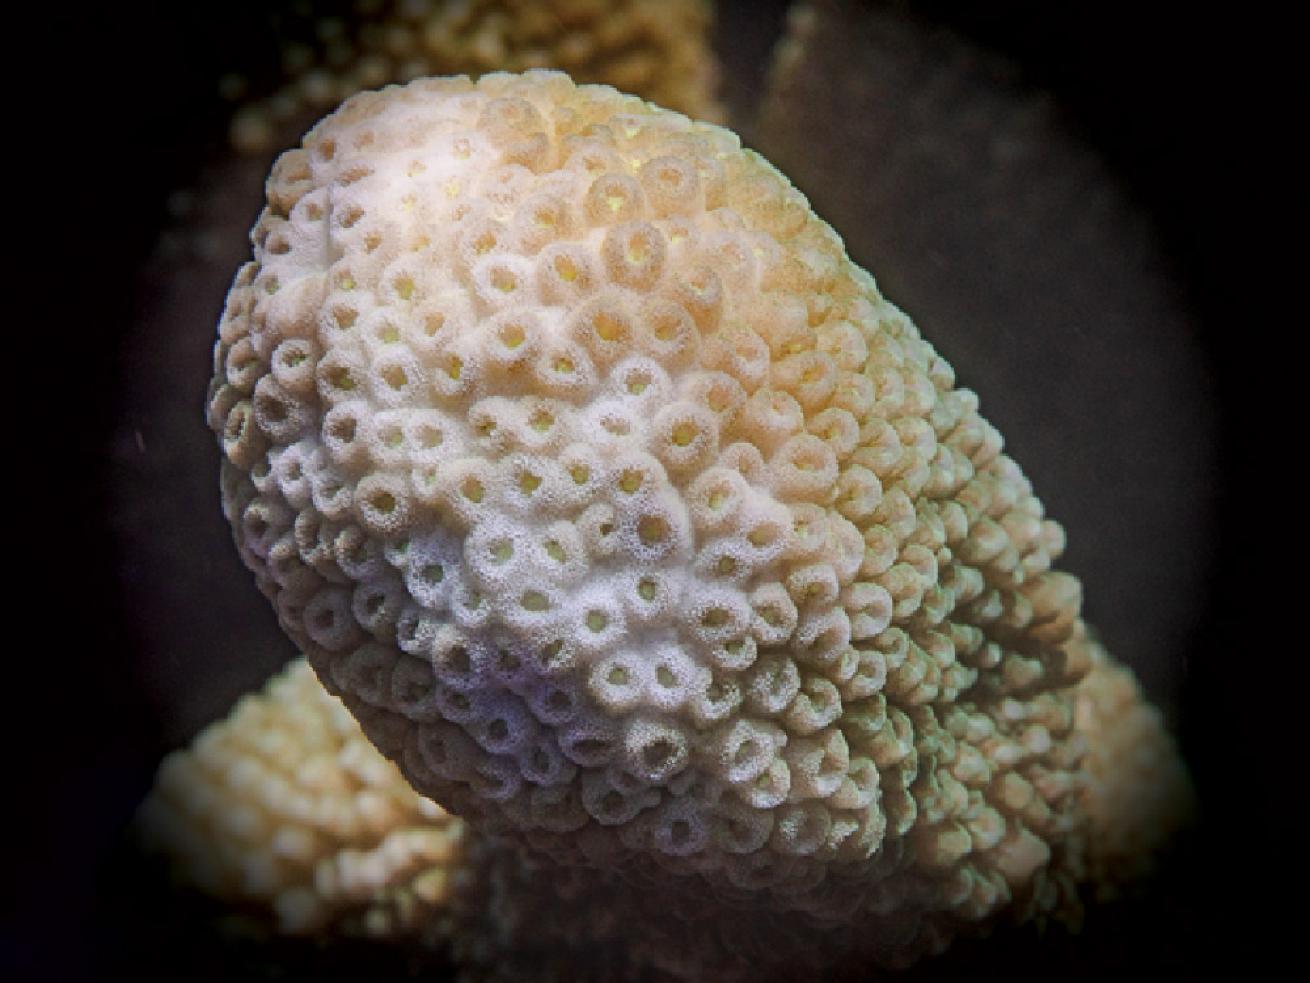 Isopora Coral